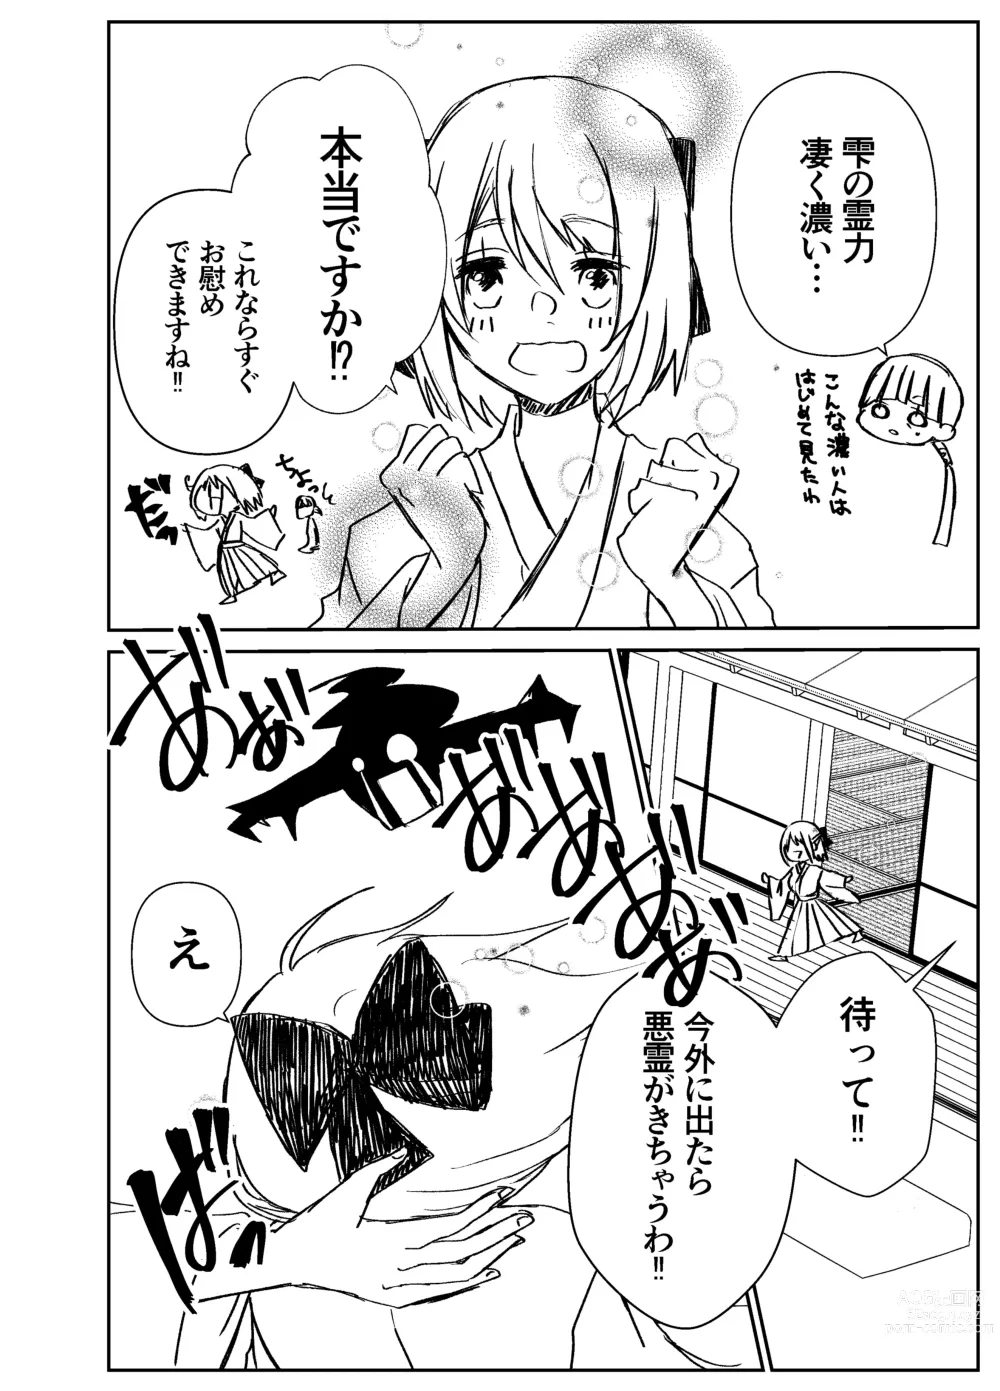 Page 9 of doujinshi Kando Komete o Nagusame Itashimasu Version 2